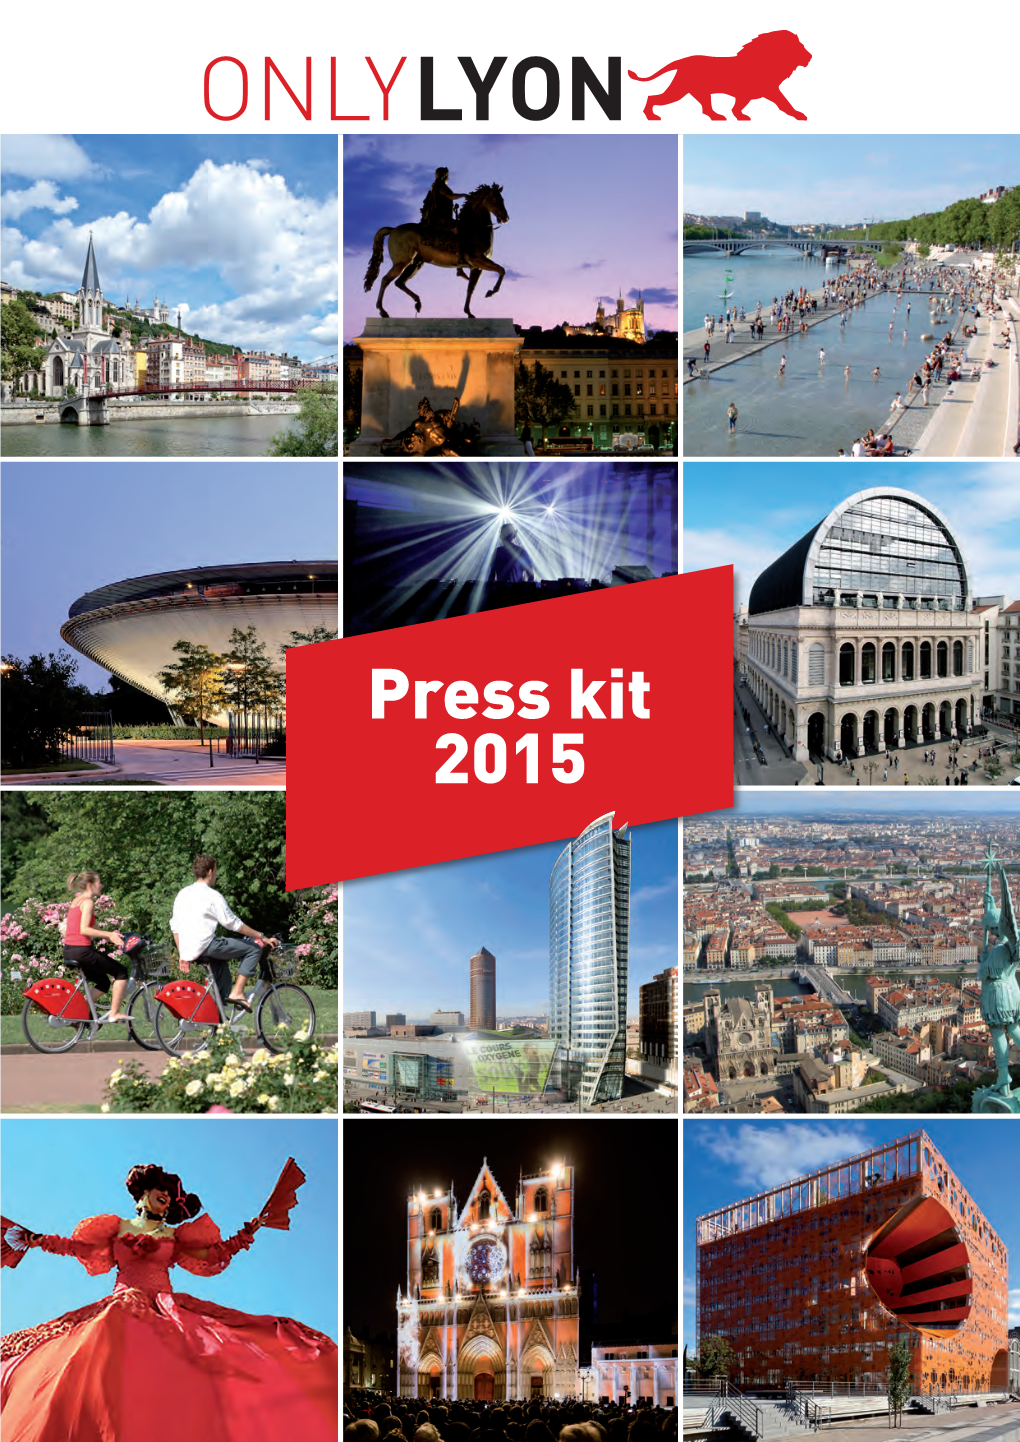 Press Kit 2015 What Is ONLYLYON?